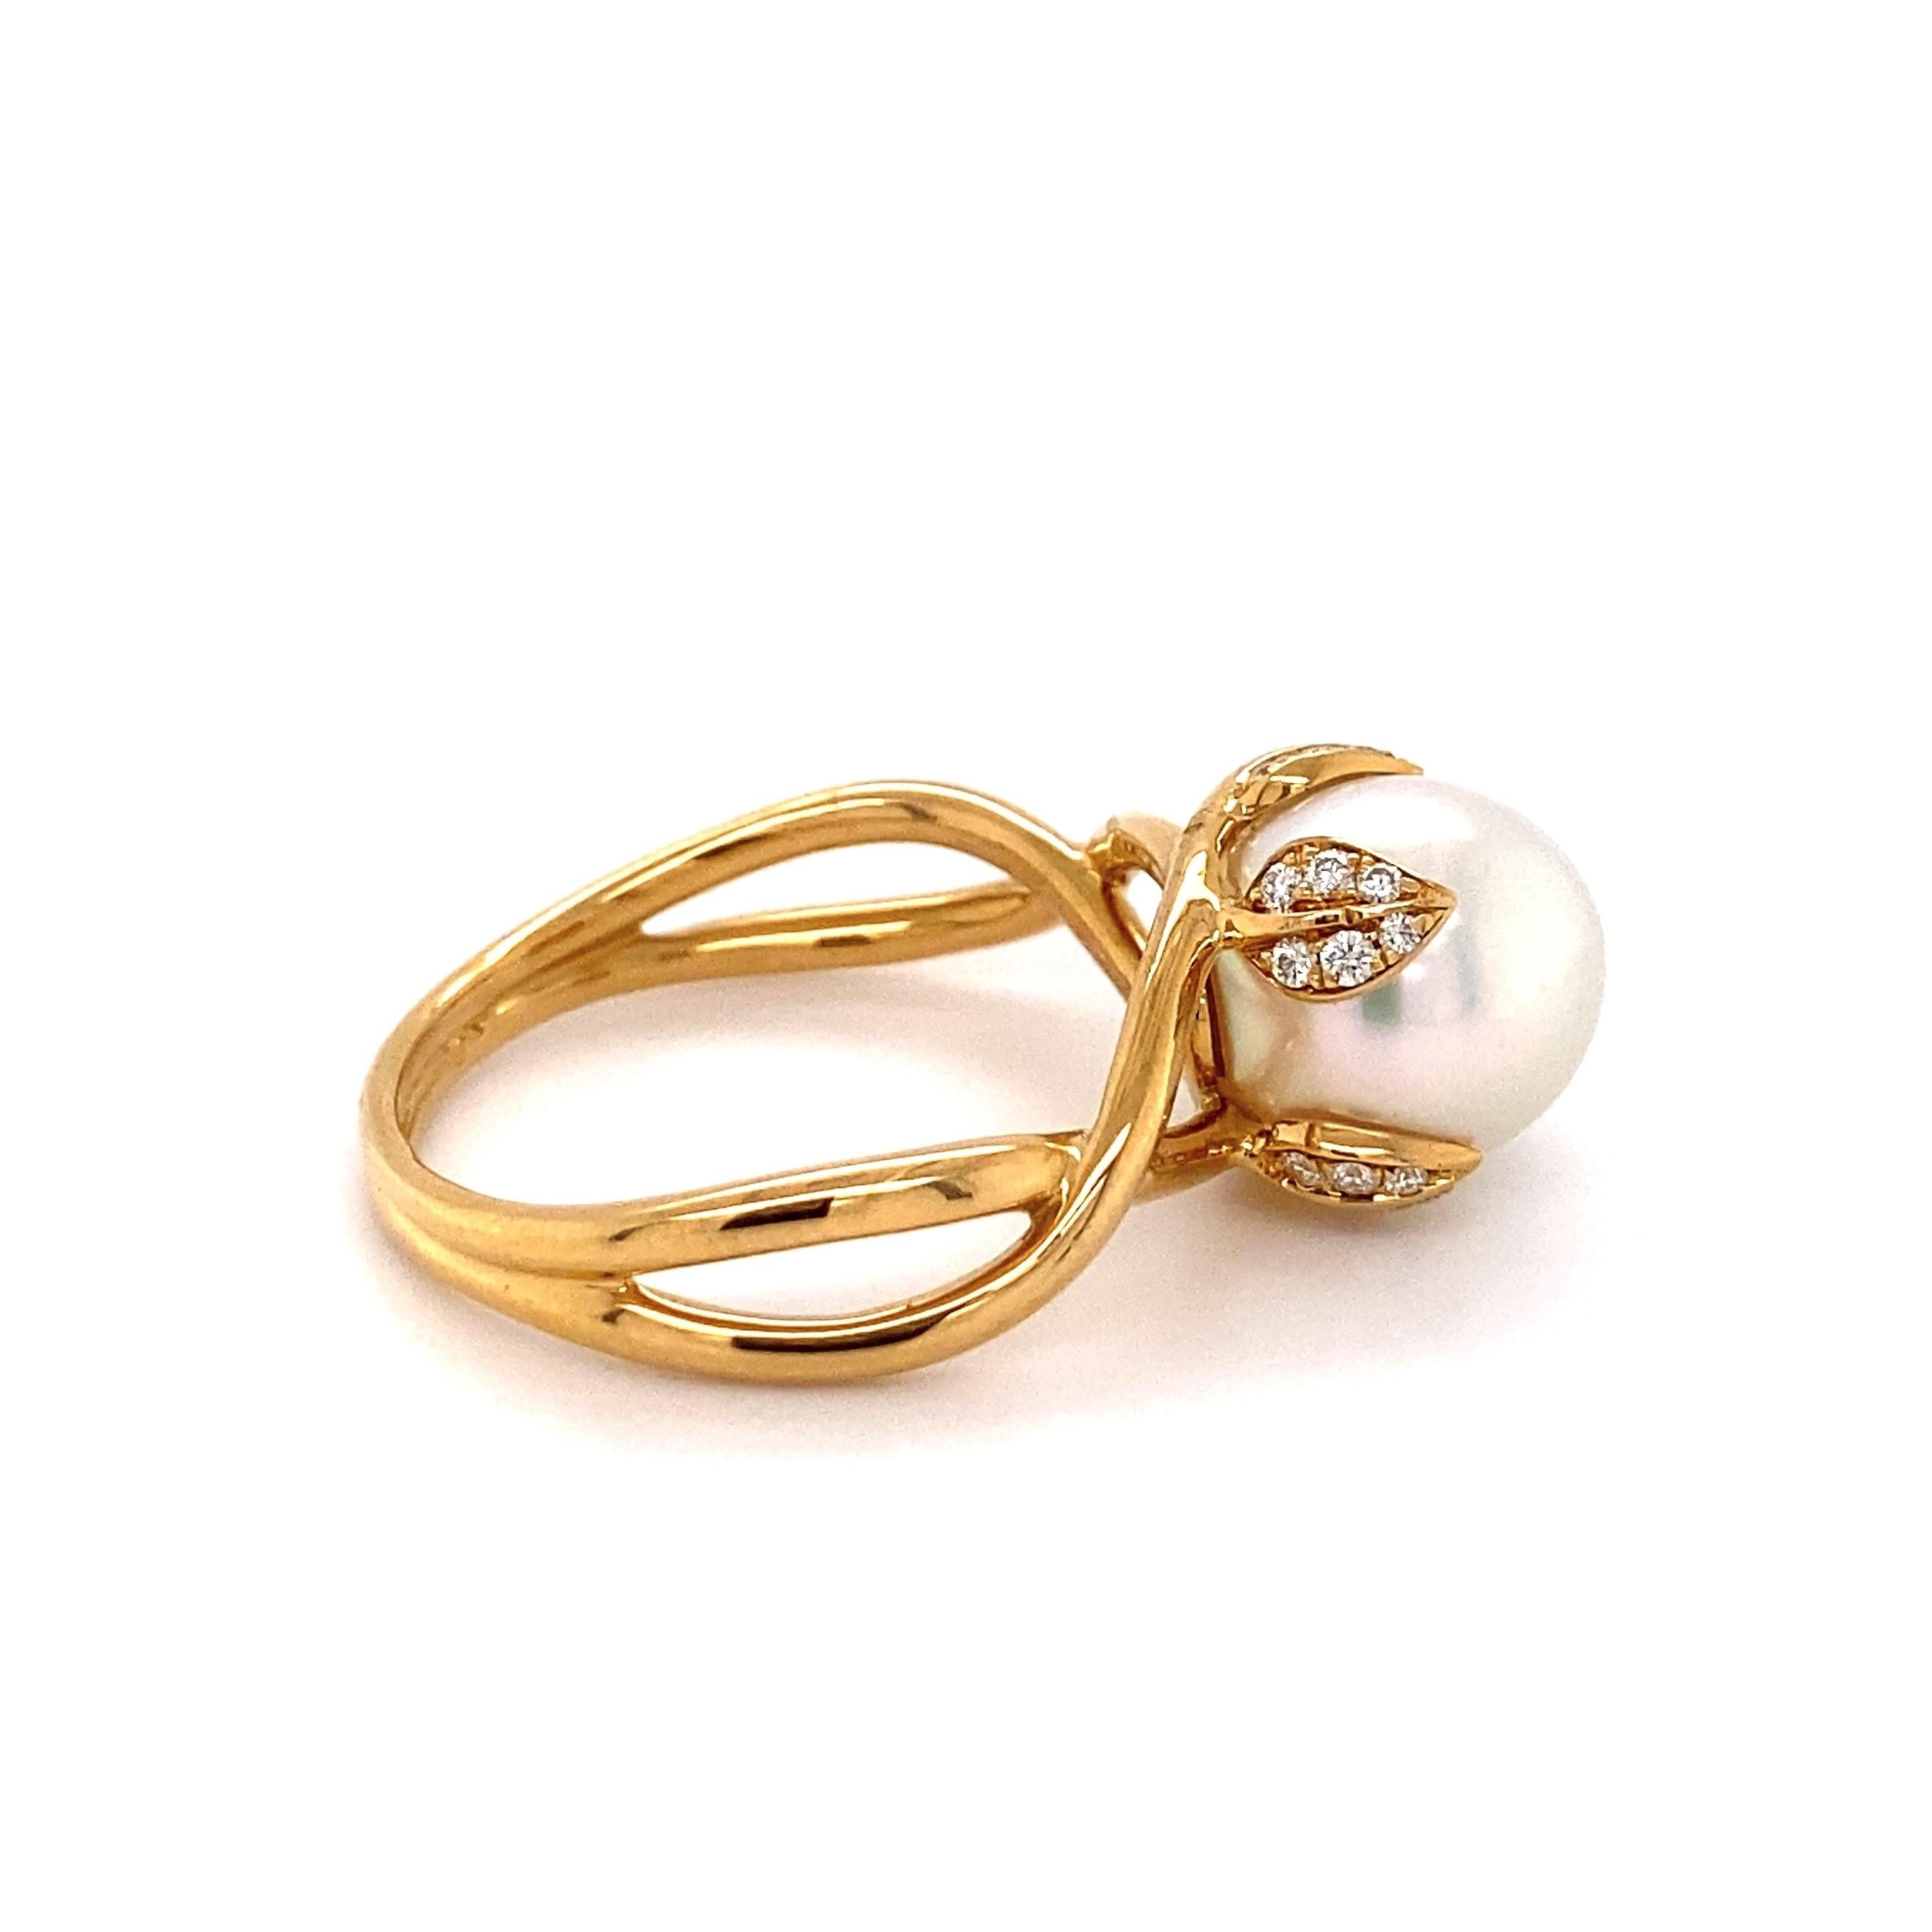 Einfach schön! 18K Gelbgold Ring, zentriert eine 11mm Perle, akzentuiert durch Diamanten, ca. 0,24tcw. Schaft markiert: Tiffany & Co 750 Frankreich. Ungefähre Abmessungen: 1.35 